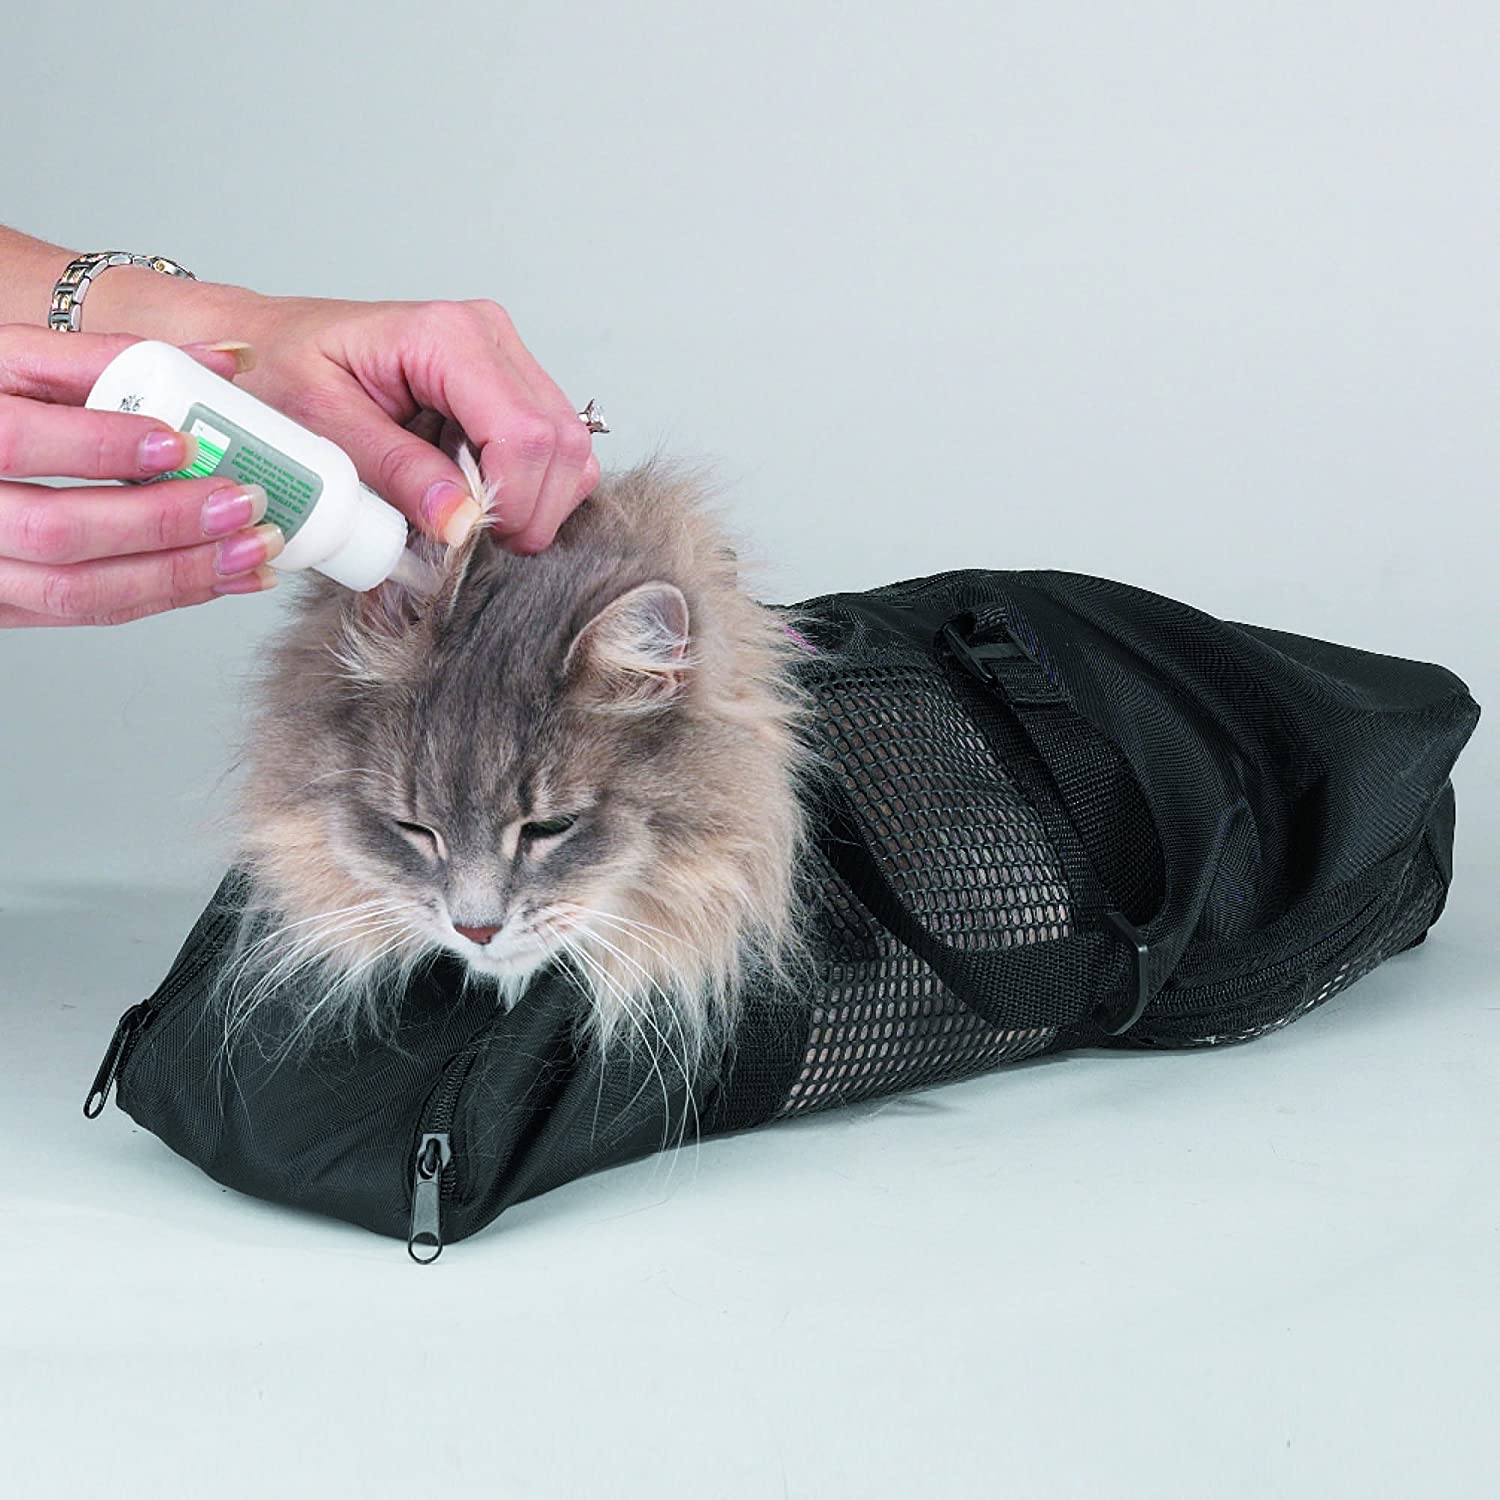 Bolsa para grooming facilita el baño, recorte de uñas o aplicación de medicamentos en gatos. (Foto Prensa Libre,  cortesía de Pet Click GT)